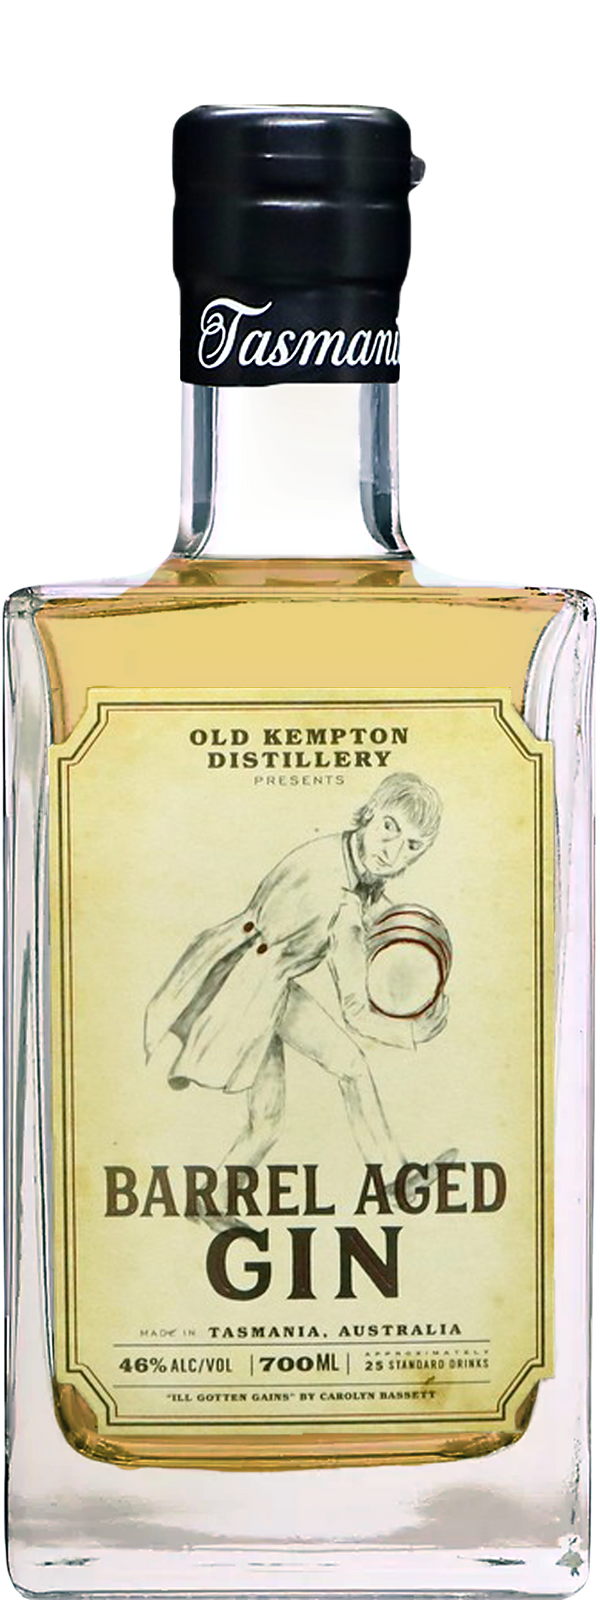 Old Kempton Barrel Aged Gin